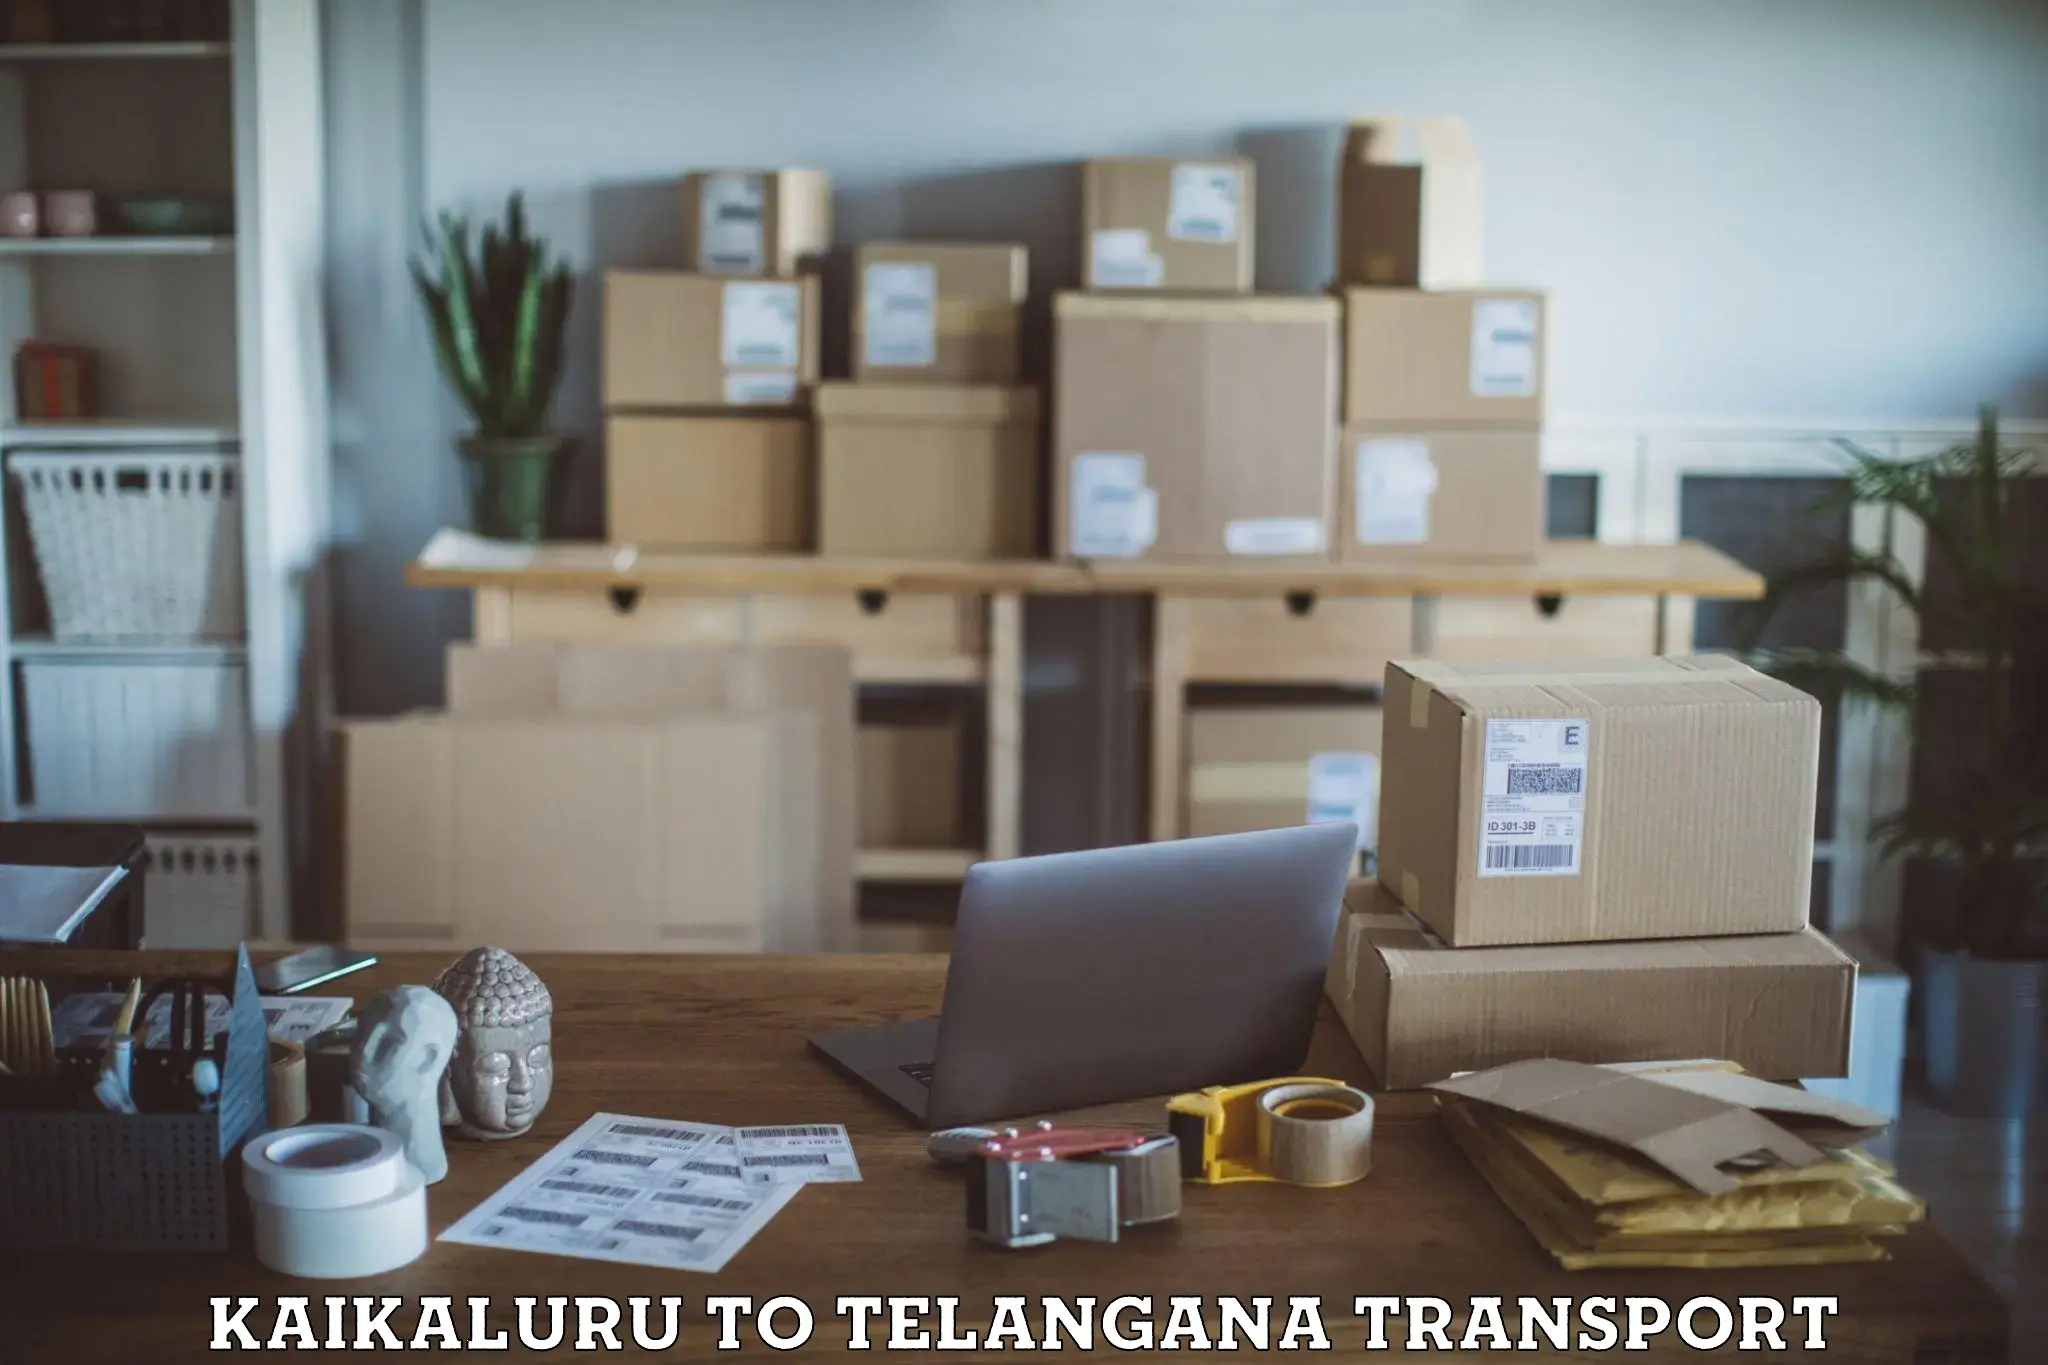 Container transport service Kaikaluru to Mudigonda